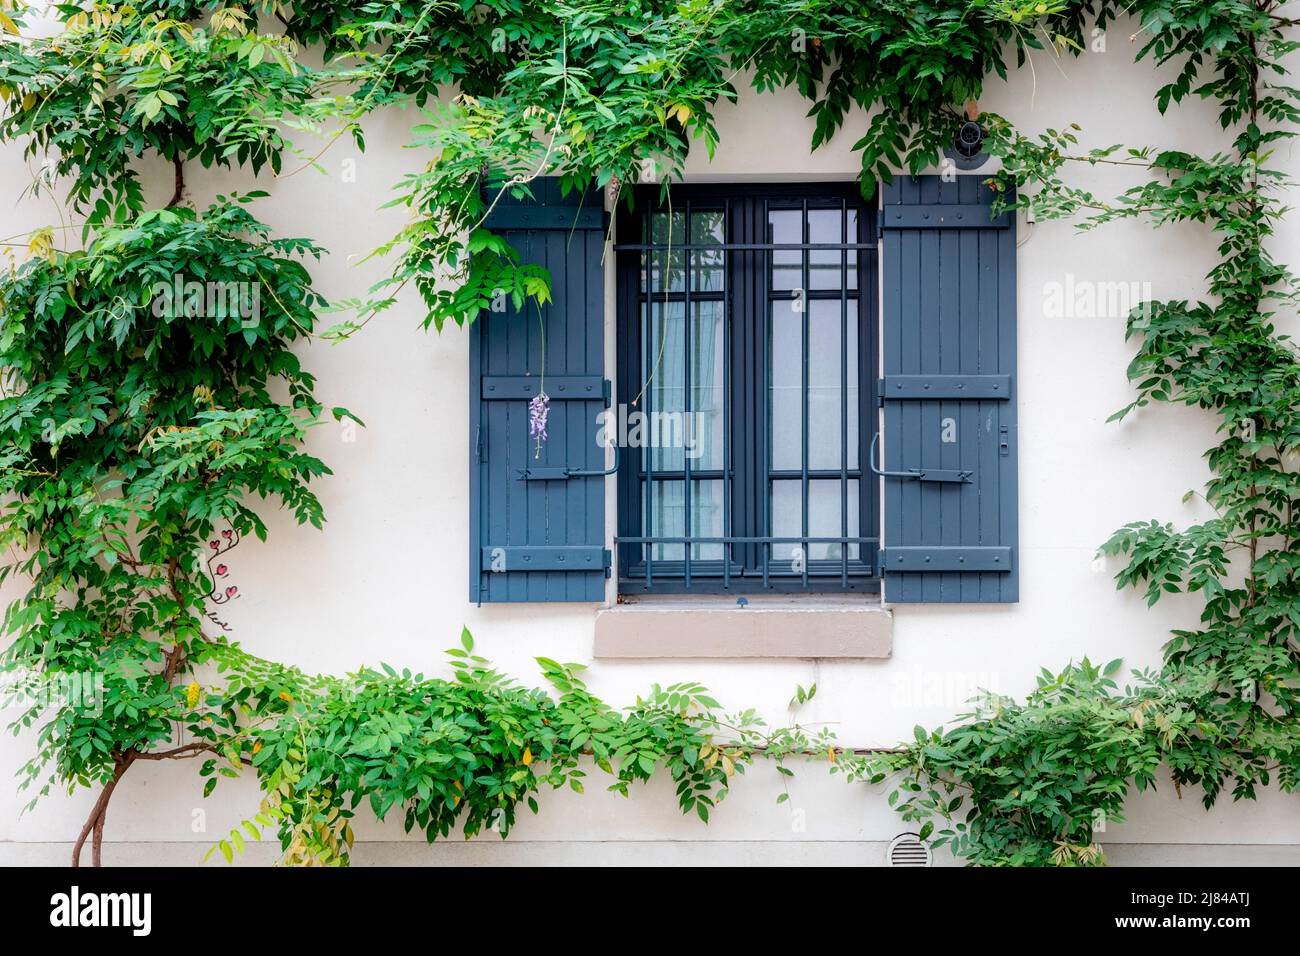 Des vignes vertes entourent une fenêtre et des volets à Montmartre, Paris, France Banque D'Images